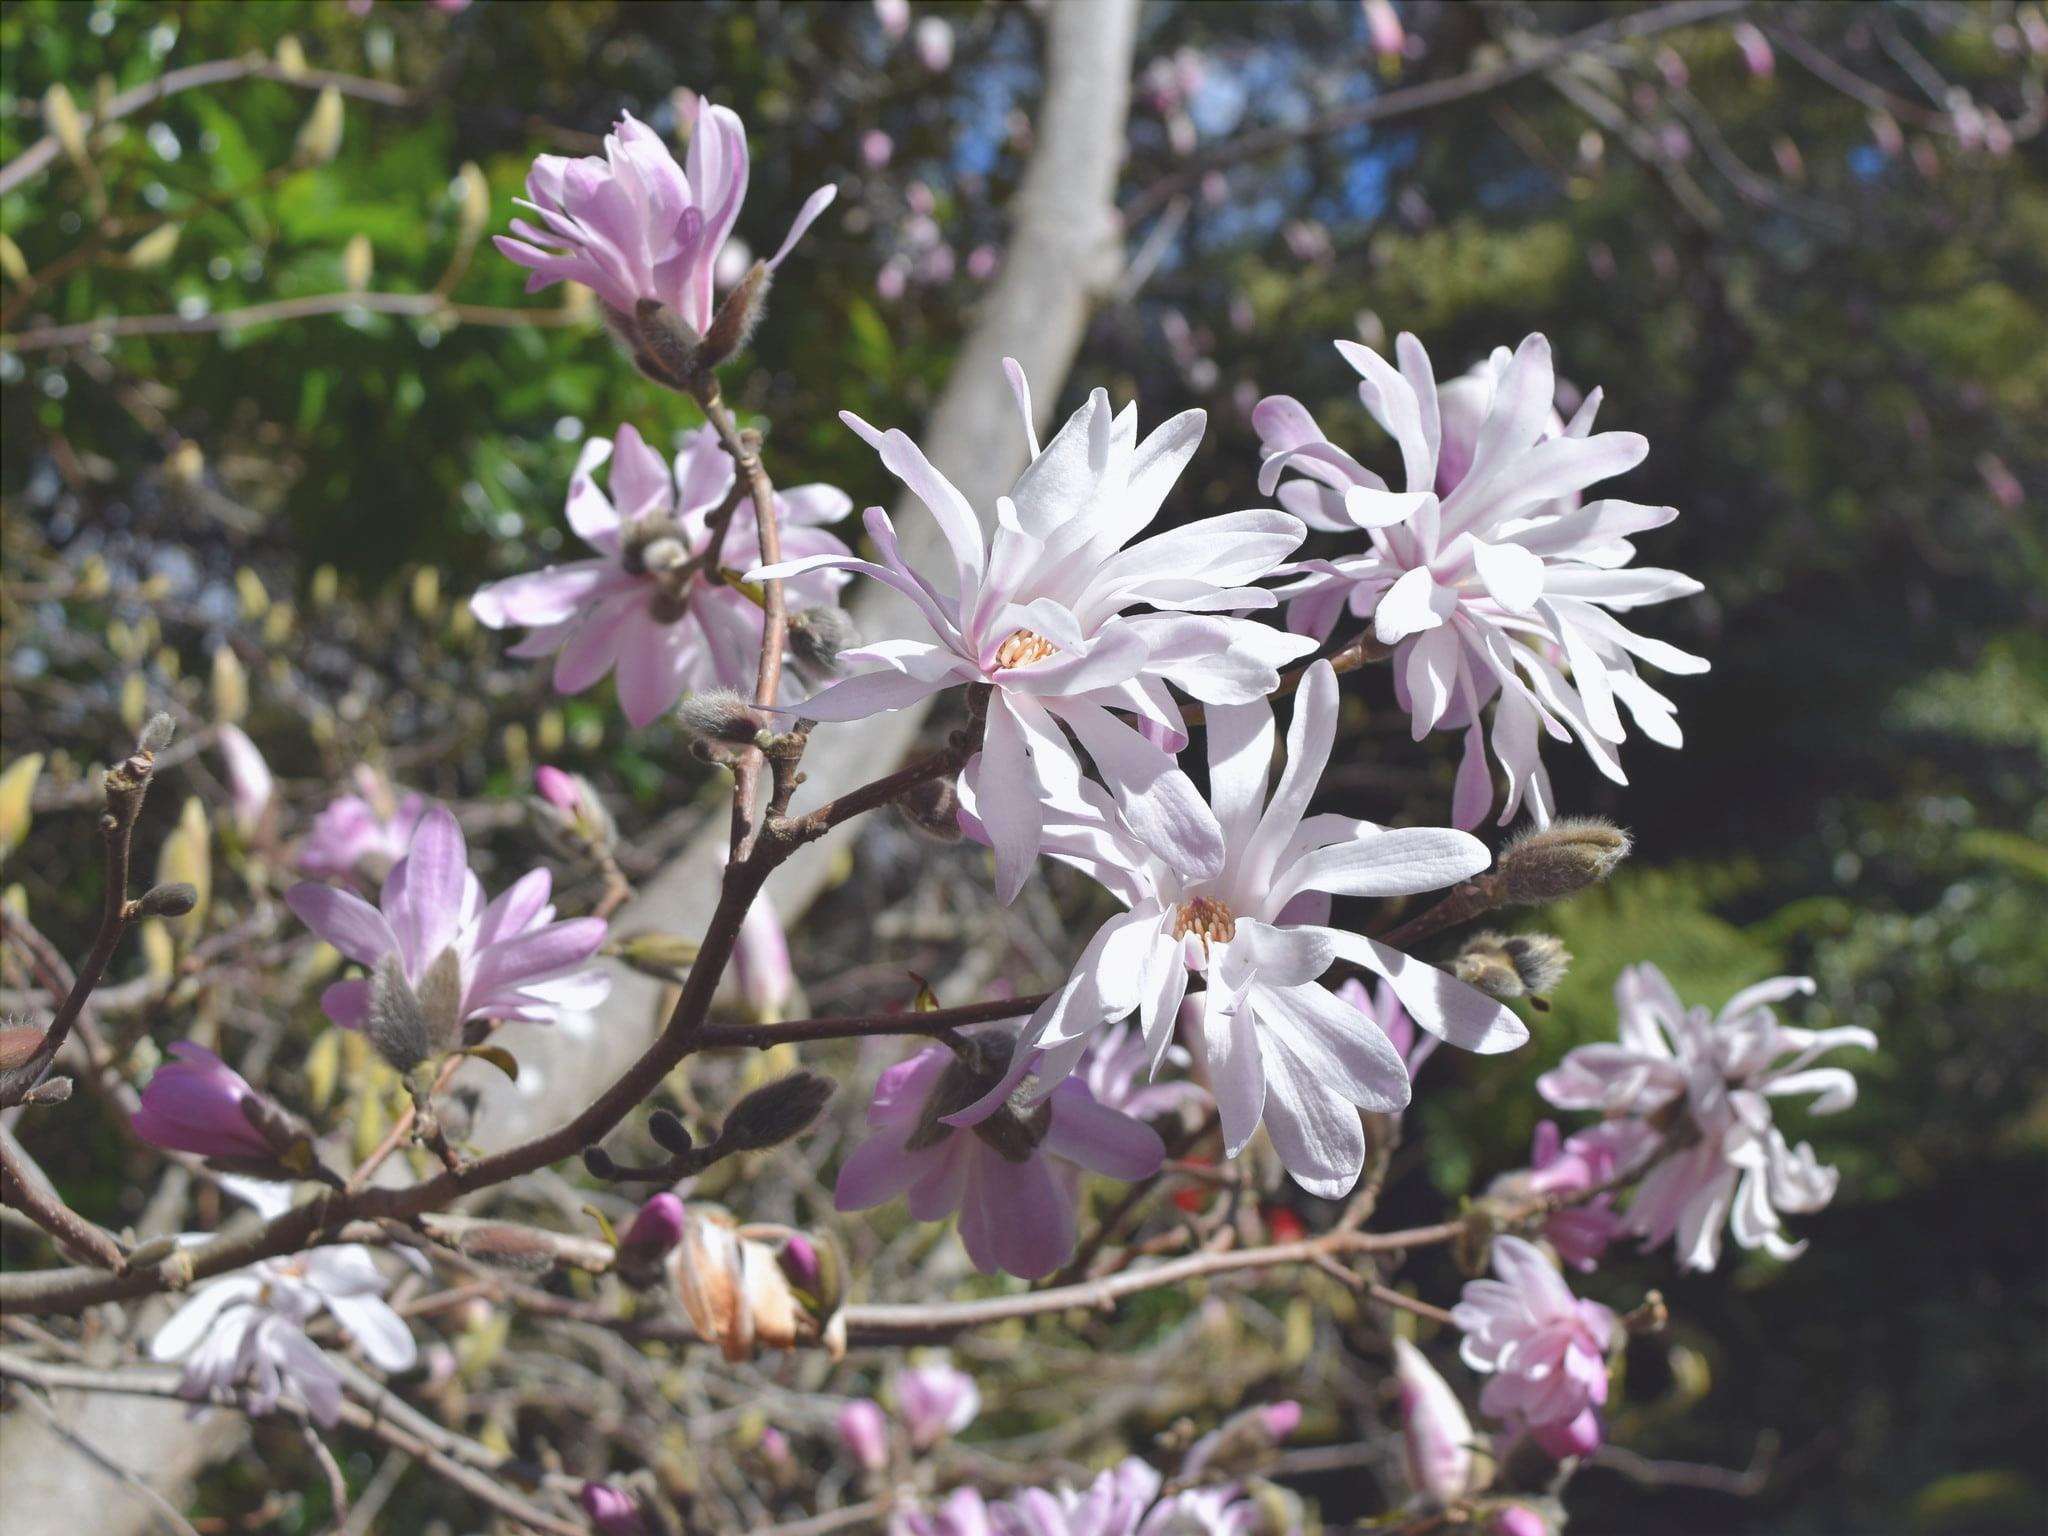 I fiori della Magnolia stellata Rosea sono rosati.